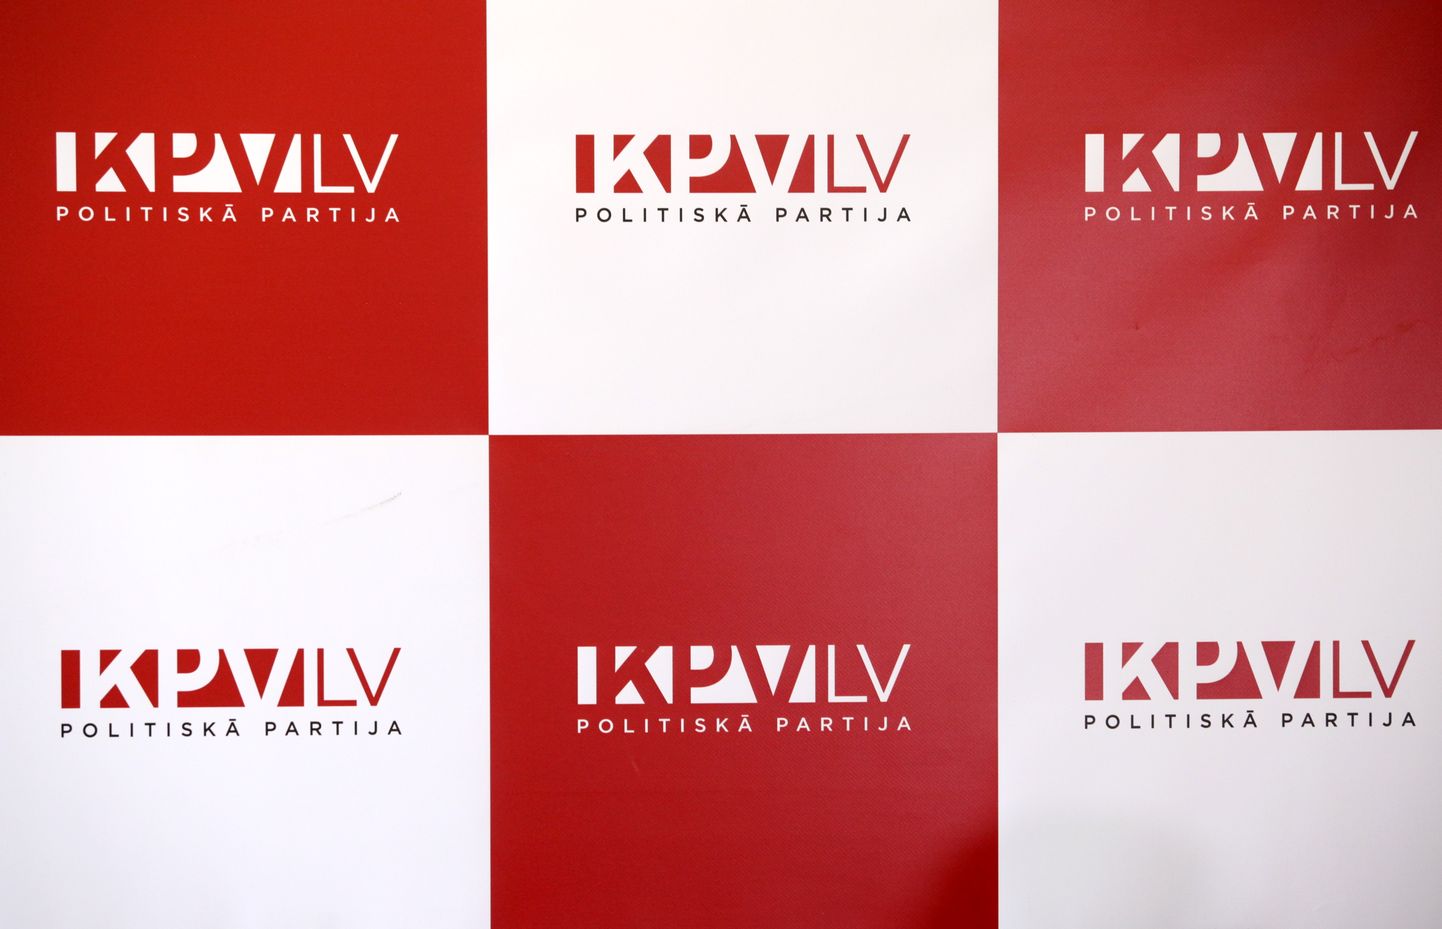 Логотип партии "KPV LV"